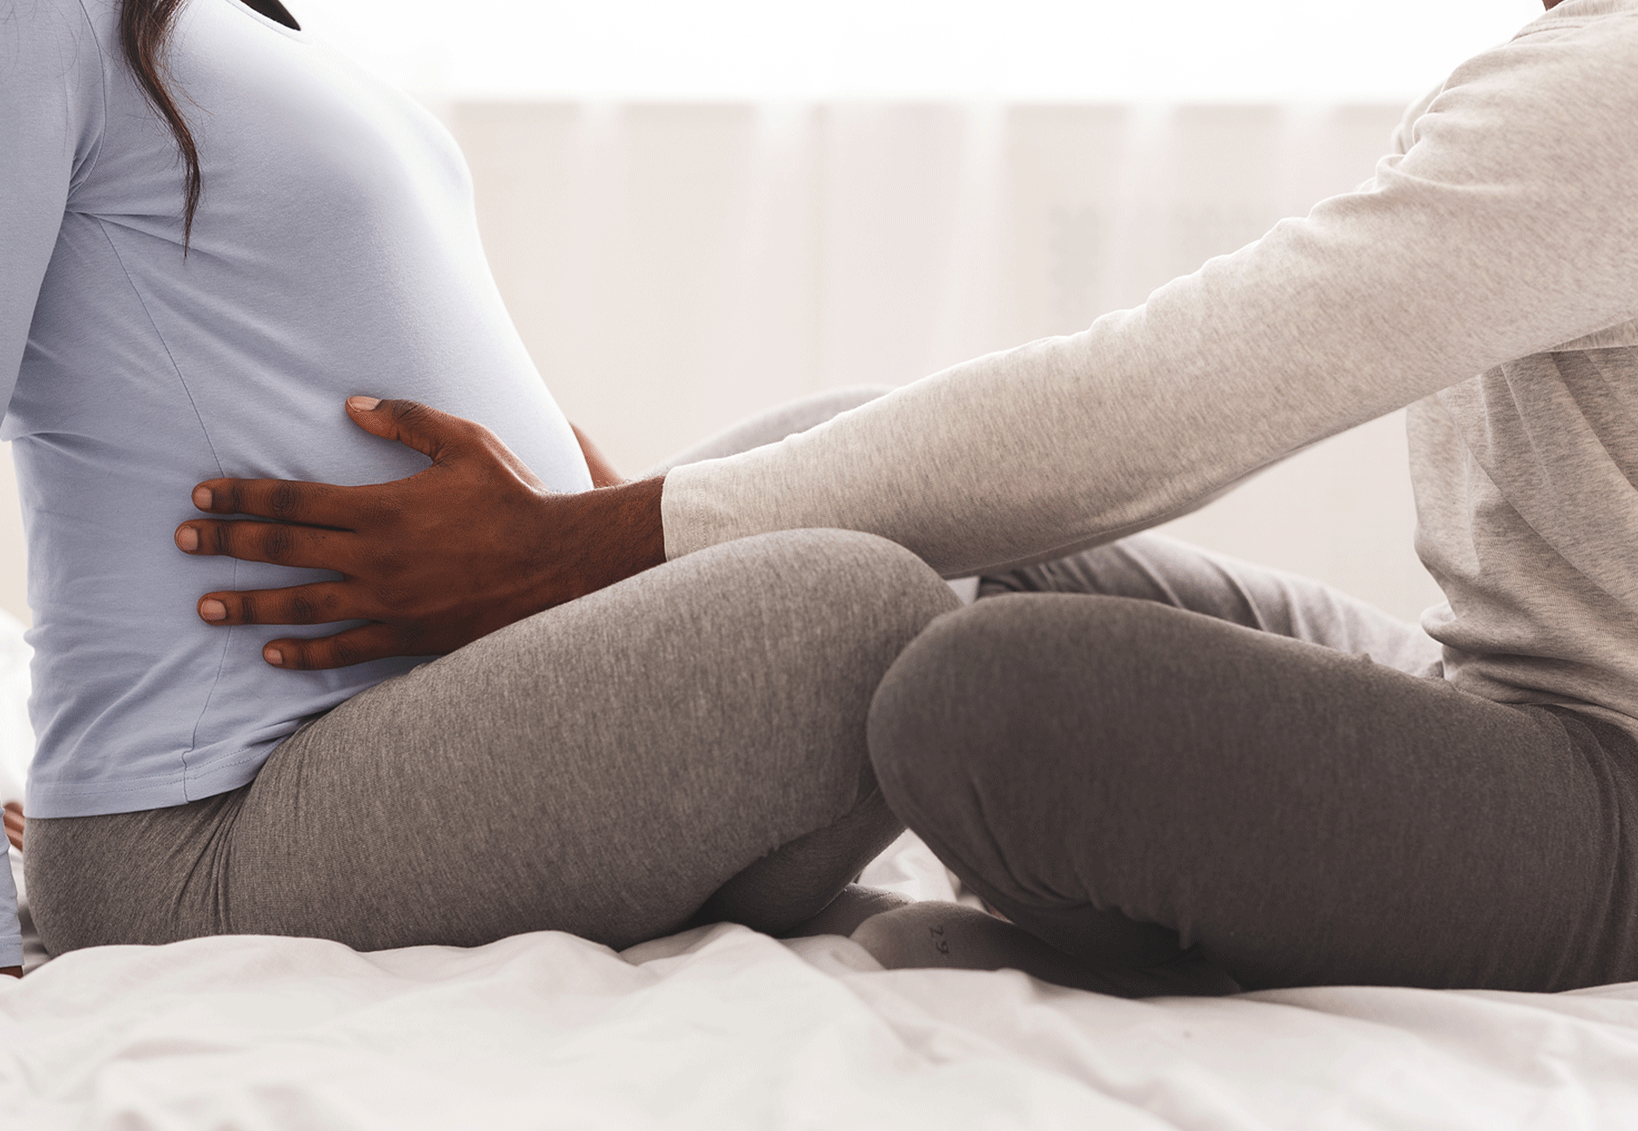 Are Vibrators Safe For Pregnancy?